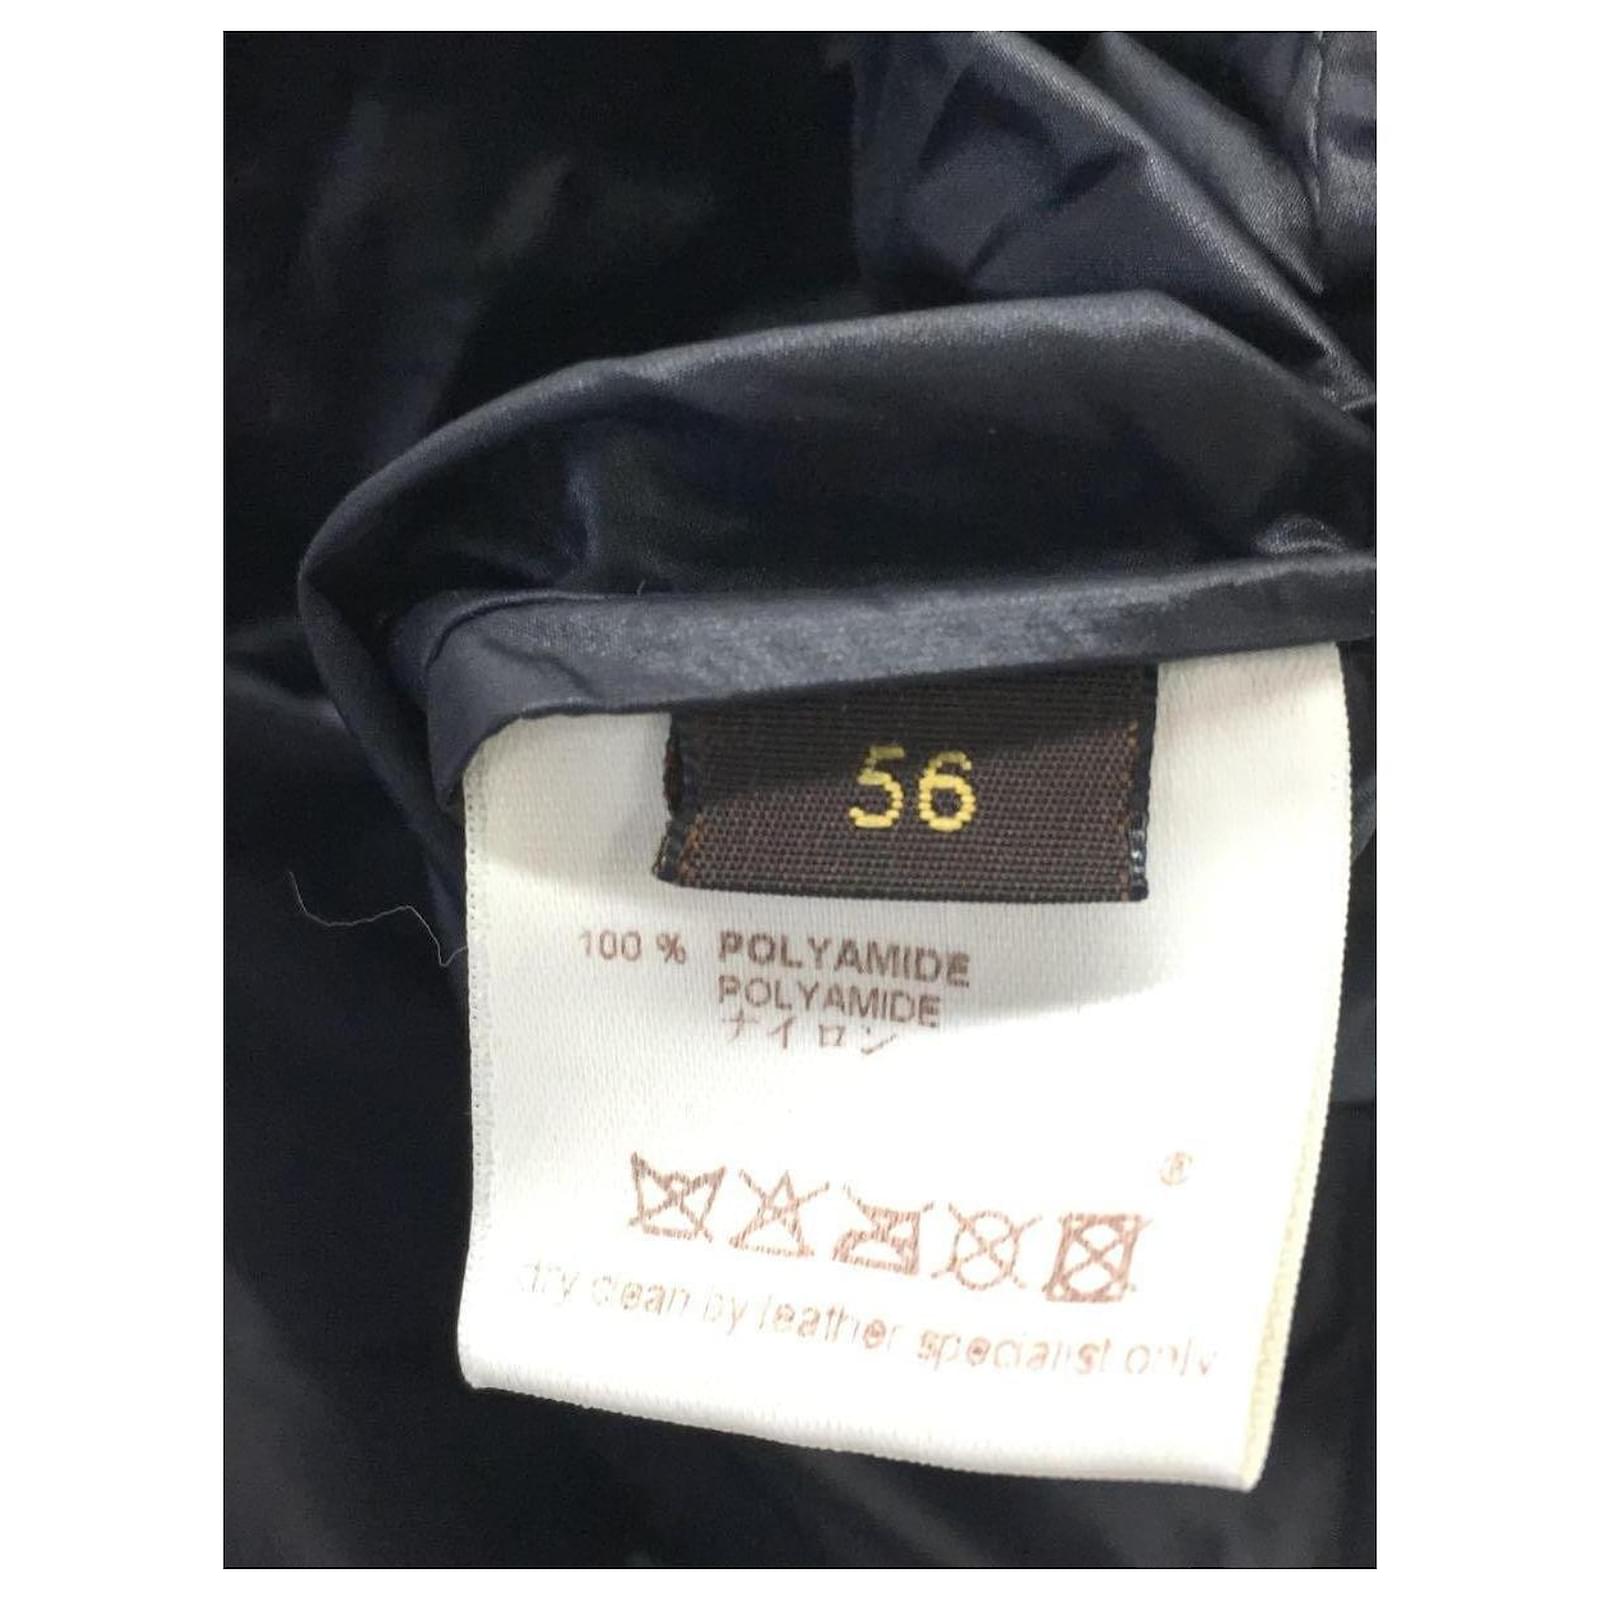 LOUIS VUITTON Nylon jacket / 46 / Nylon / Black / RM082M